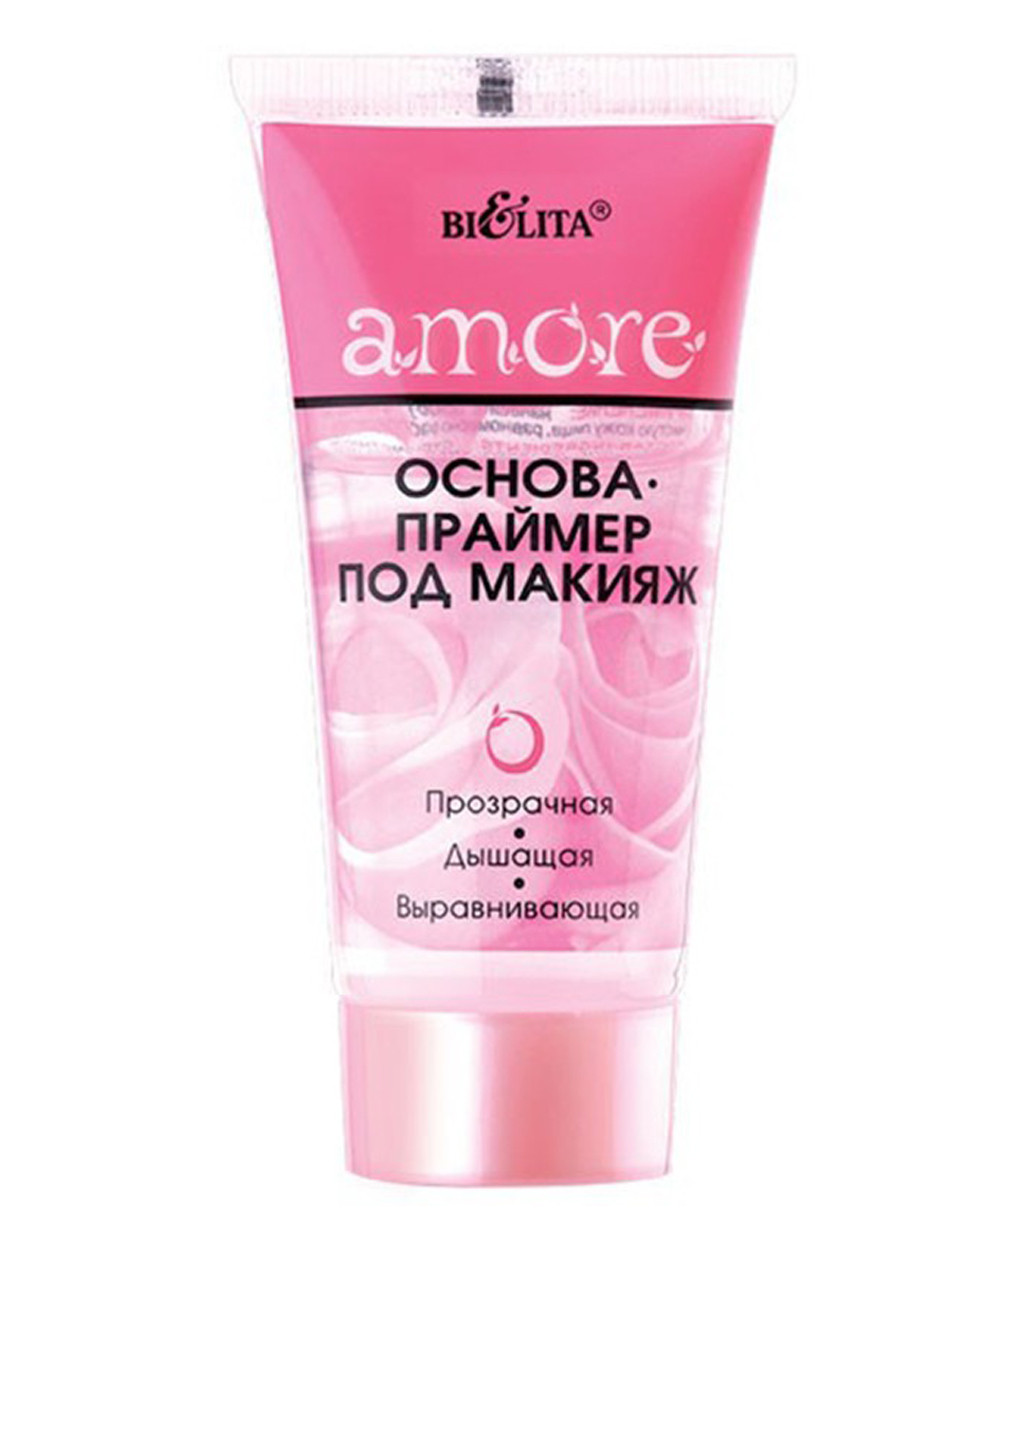 Основа для макияжа Amore, 30 мл Bielita (74511028)